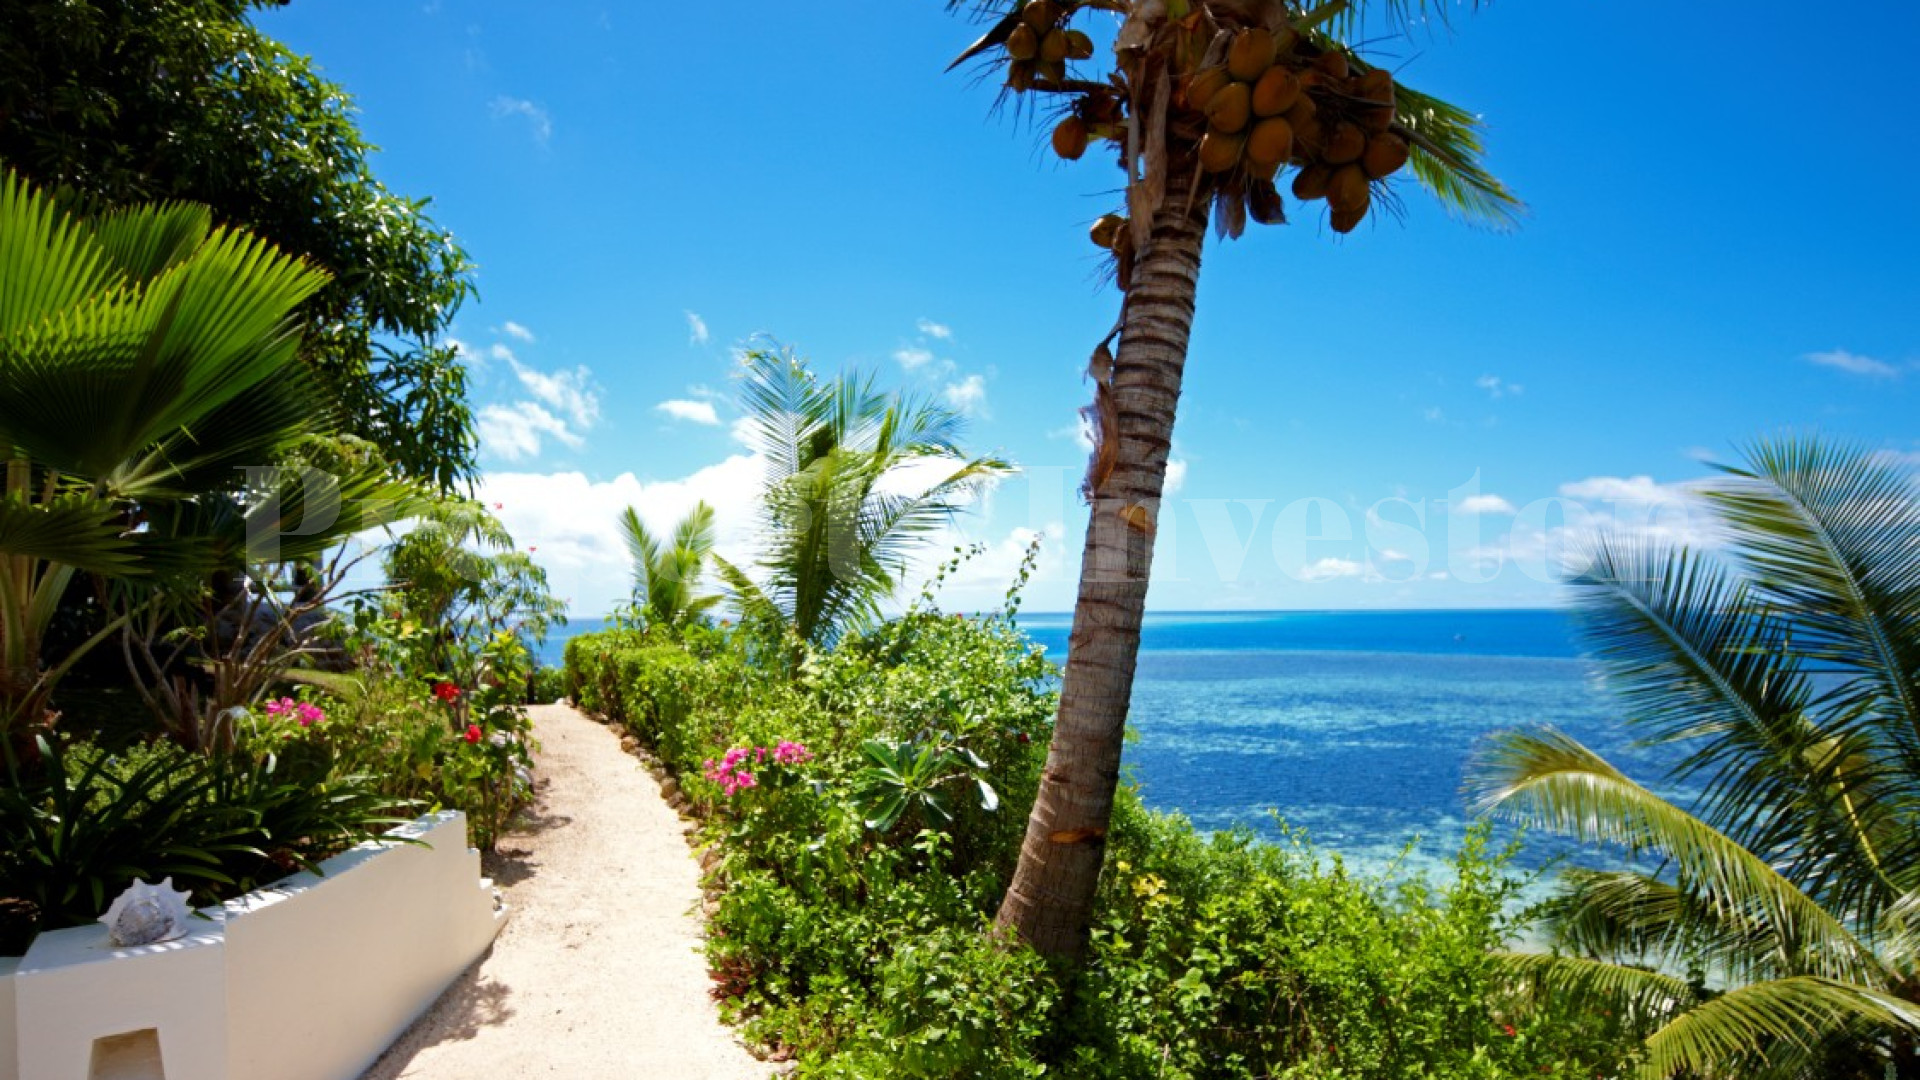 Популярный роскошный 5 звездочный бутик-отель на острове с невероятными панорамными видами на Маманука островах, Фиджи